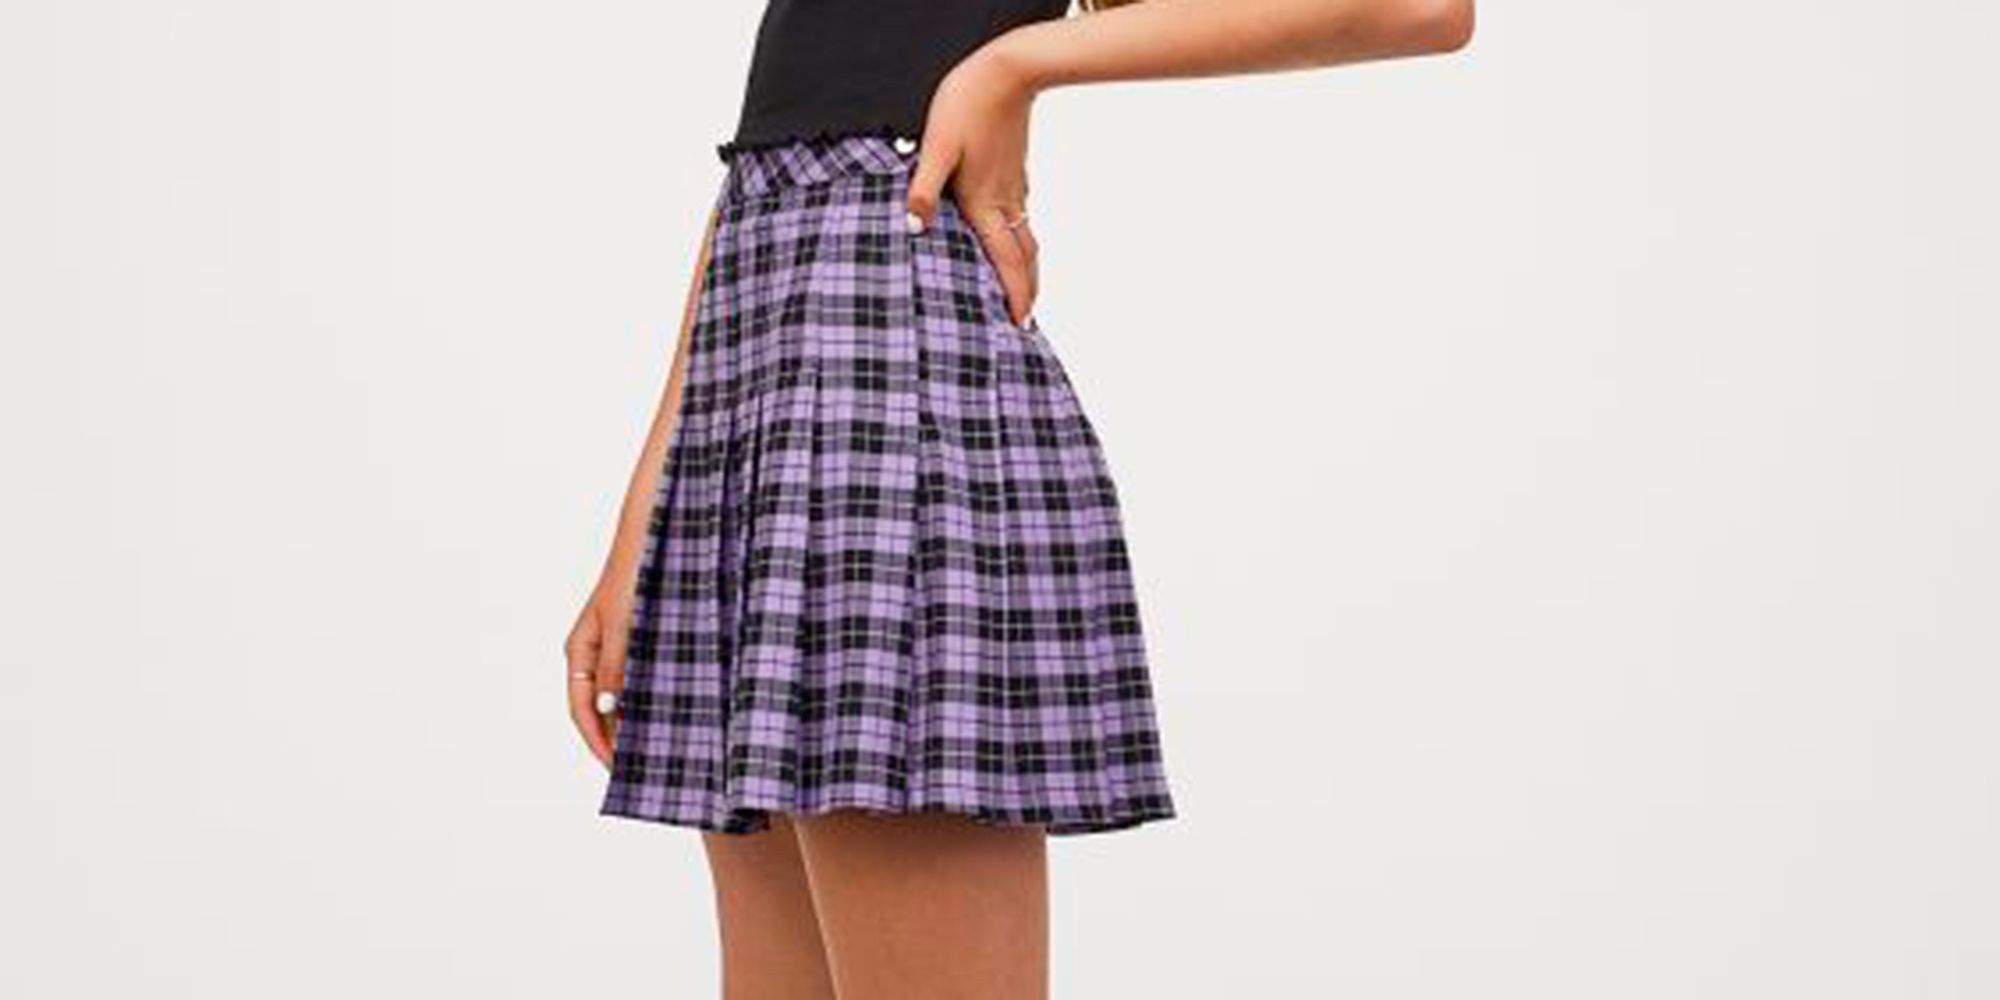 nuevas faldas H&M el estilo 'preppy'